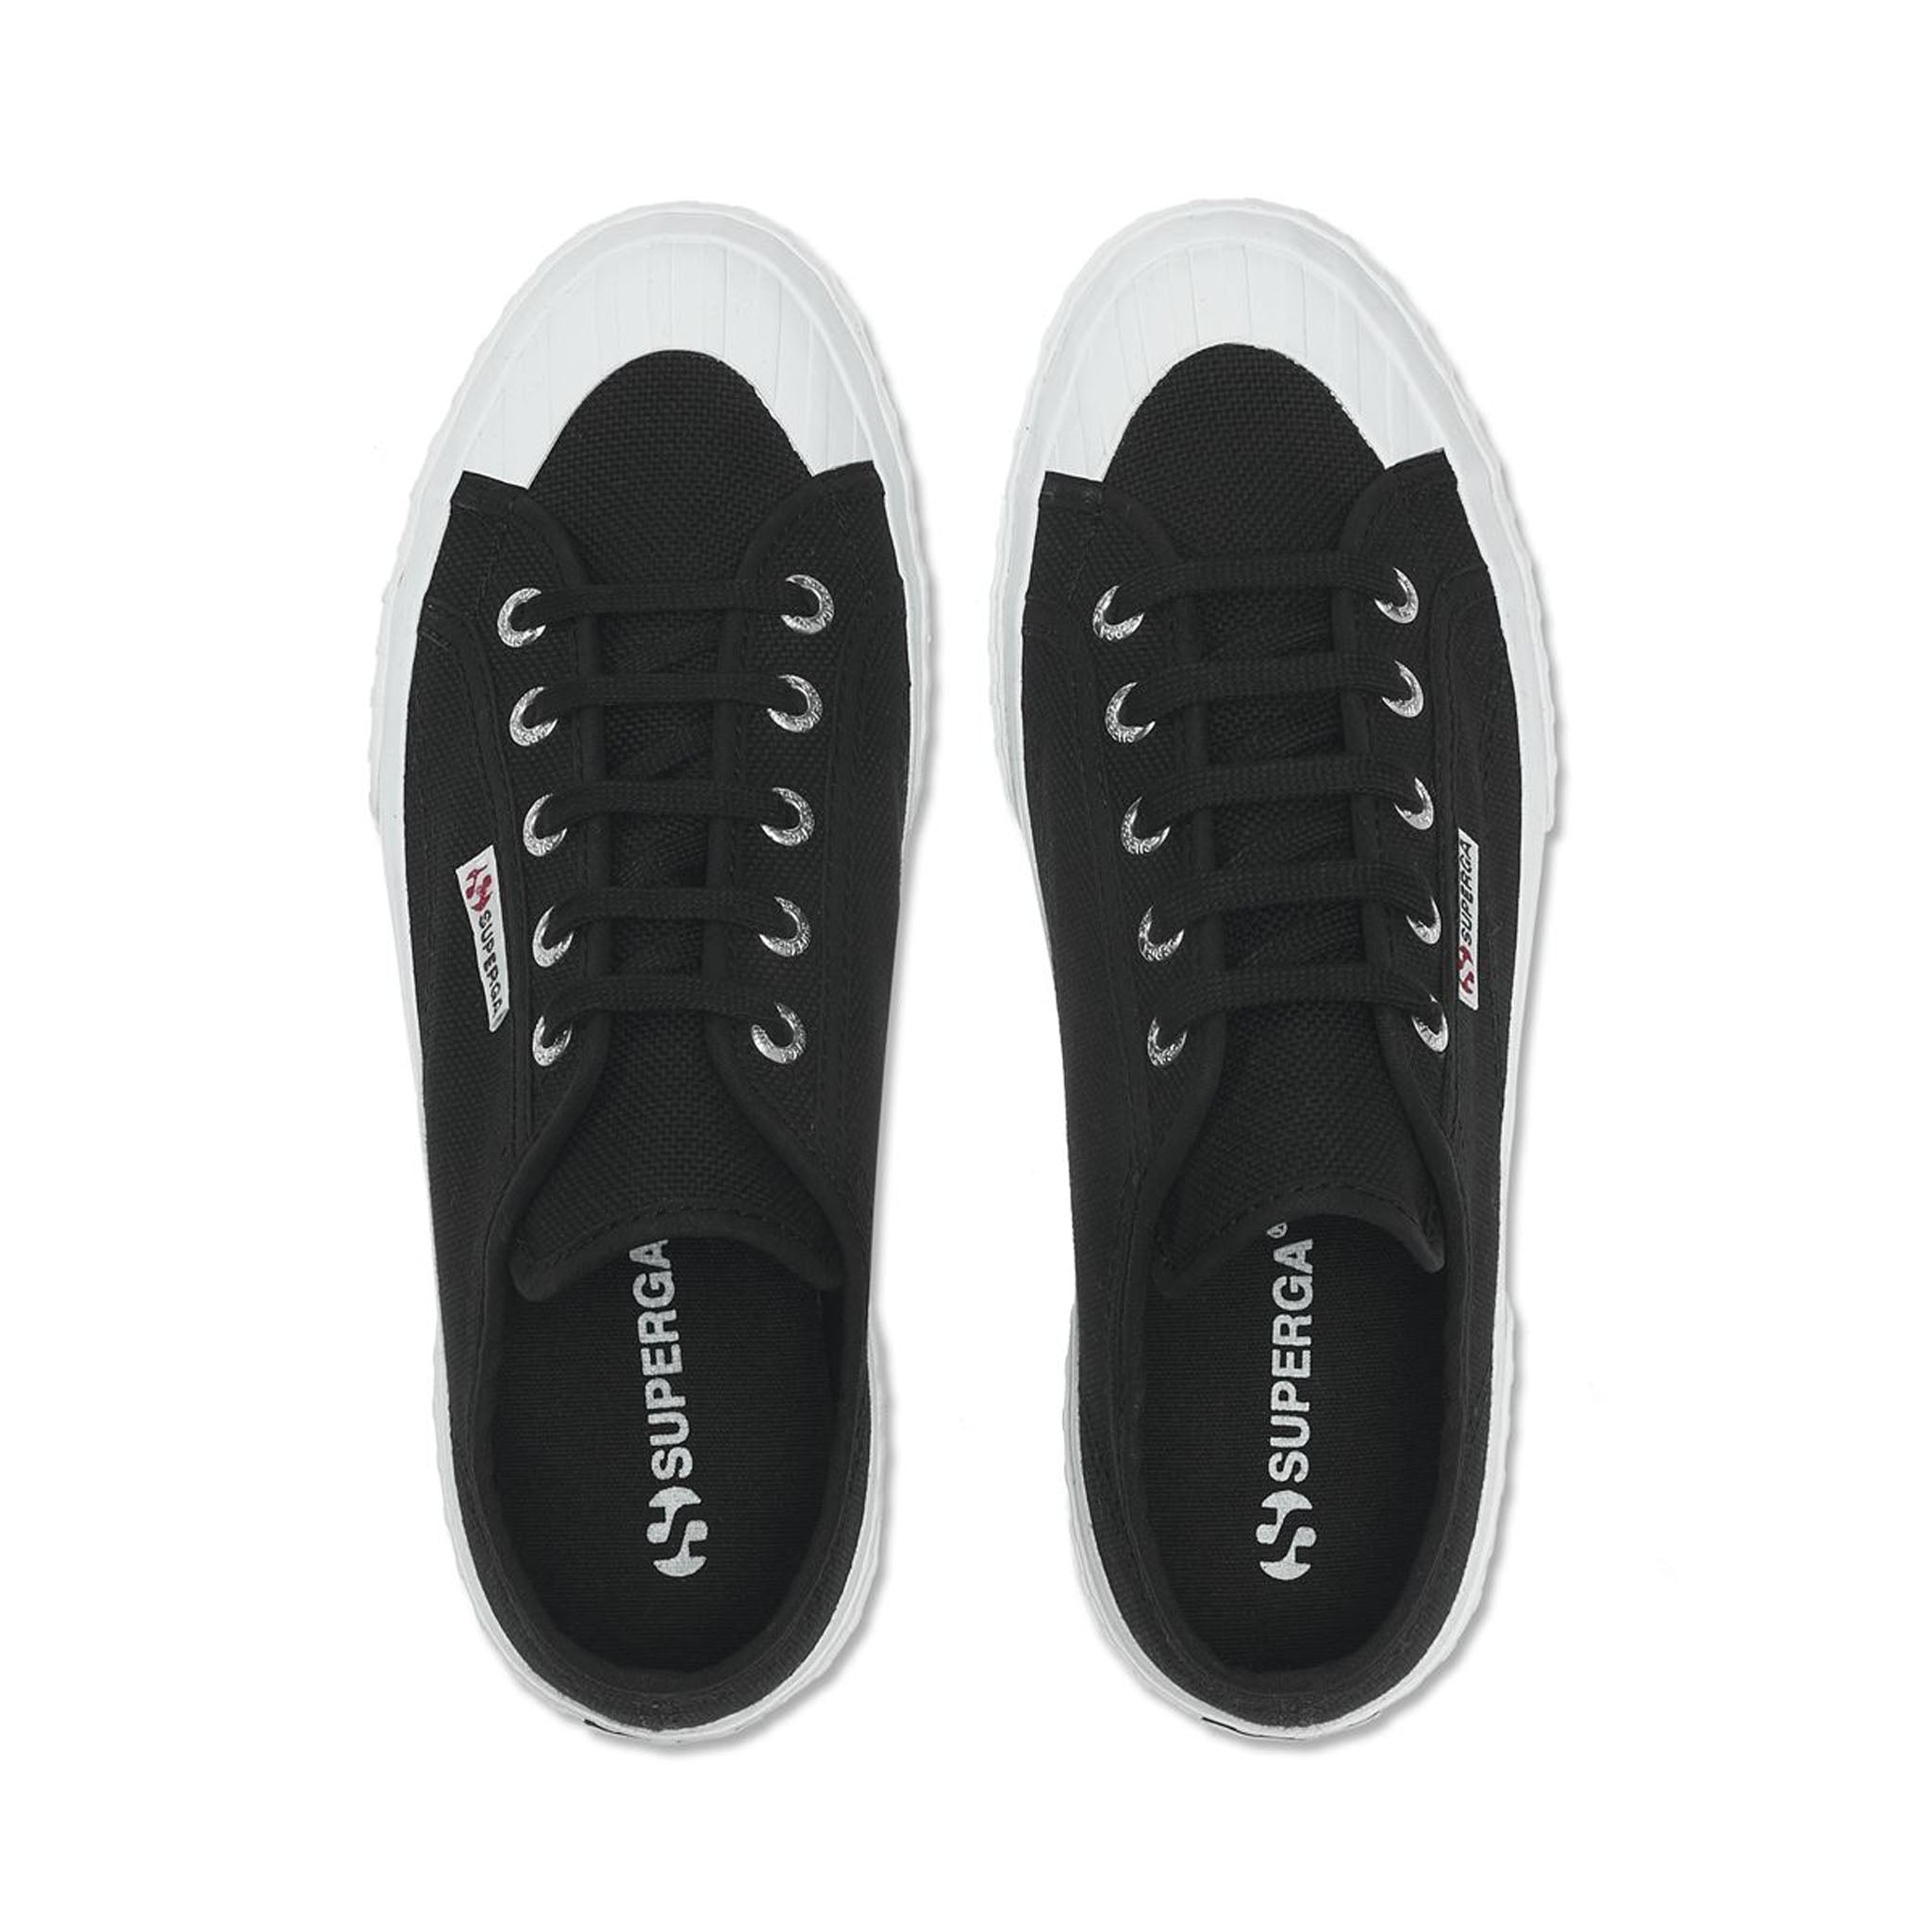 Superga 2287 Bubble Line (Black/White) Women's Shoes - ShopStyle